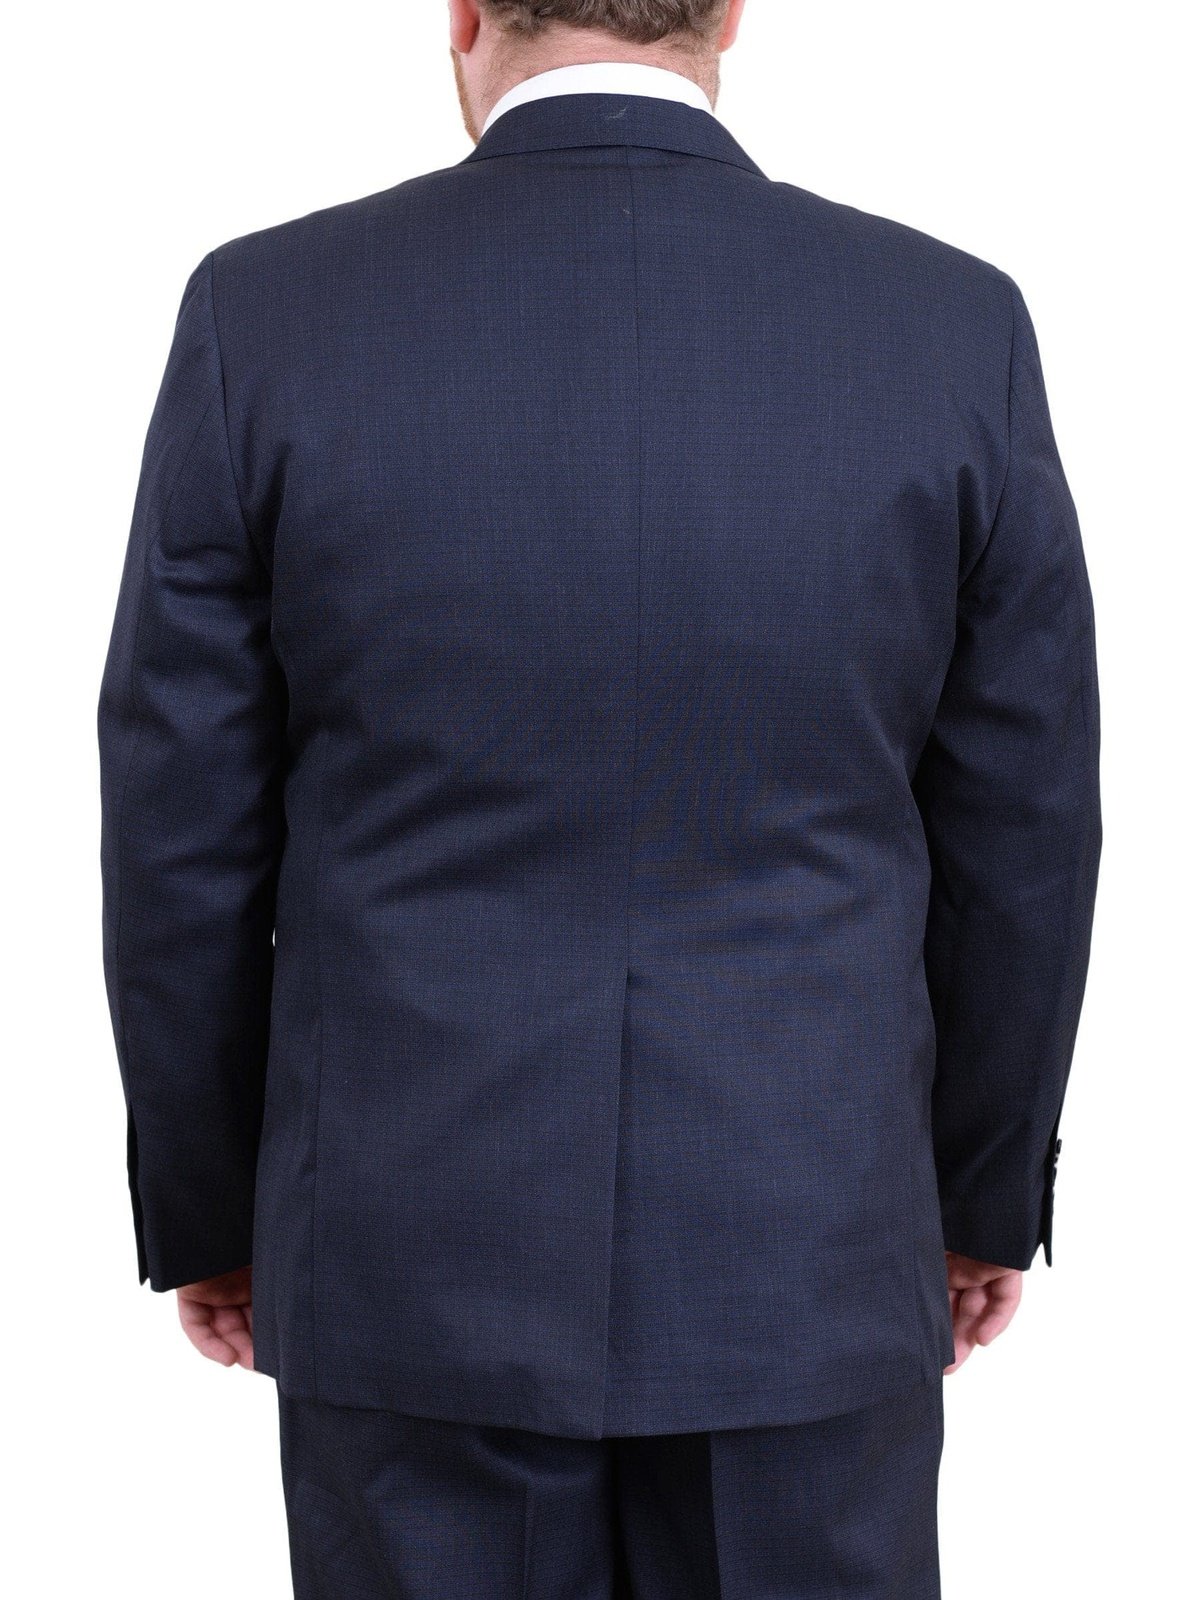 Arthur Black TWO PIECE SUITS Men&#39;s Arthur Black Executive Portly Fit Navy Blue Check Two Button Wool Suit